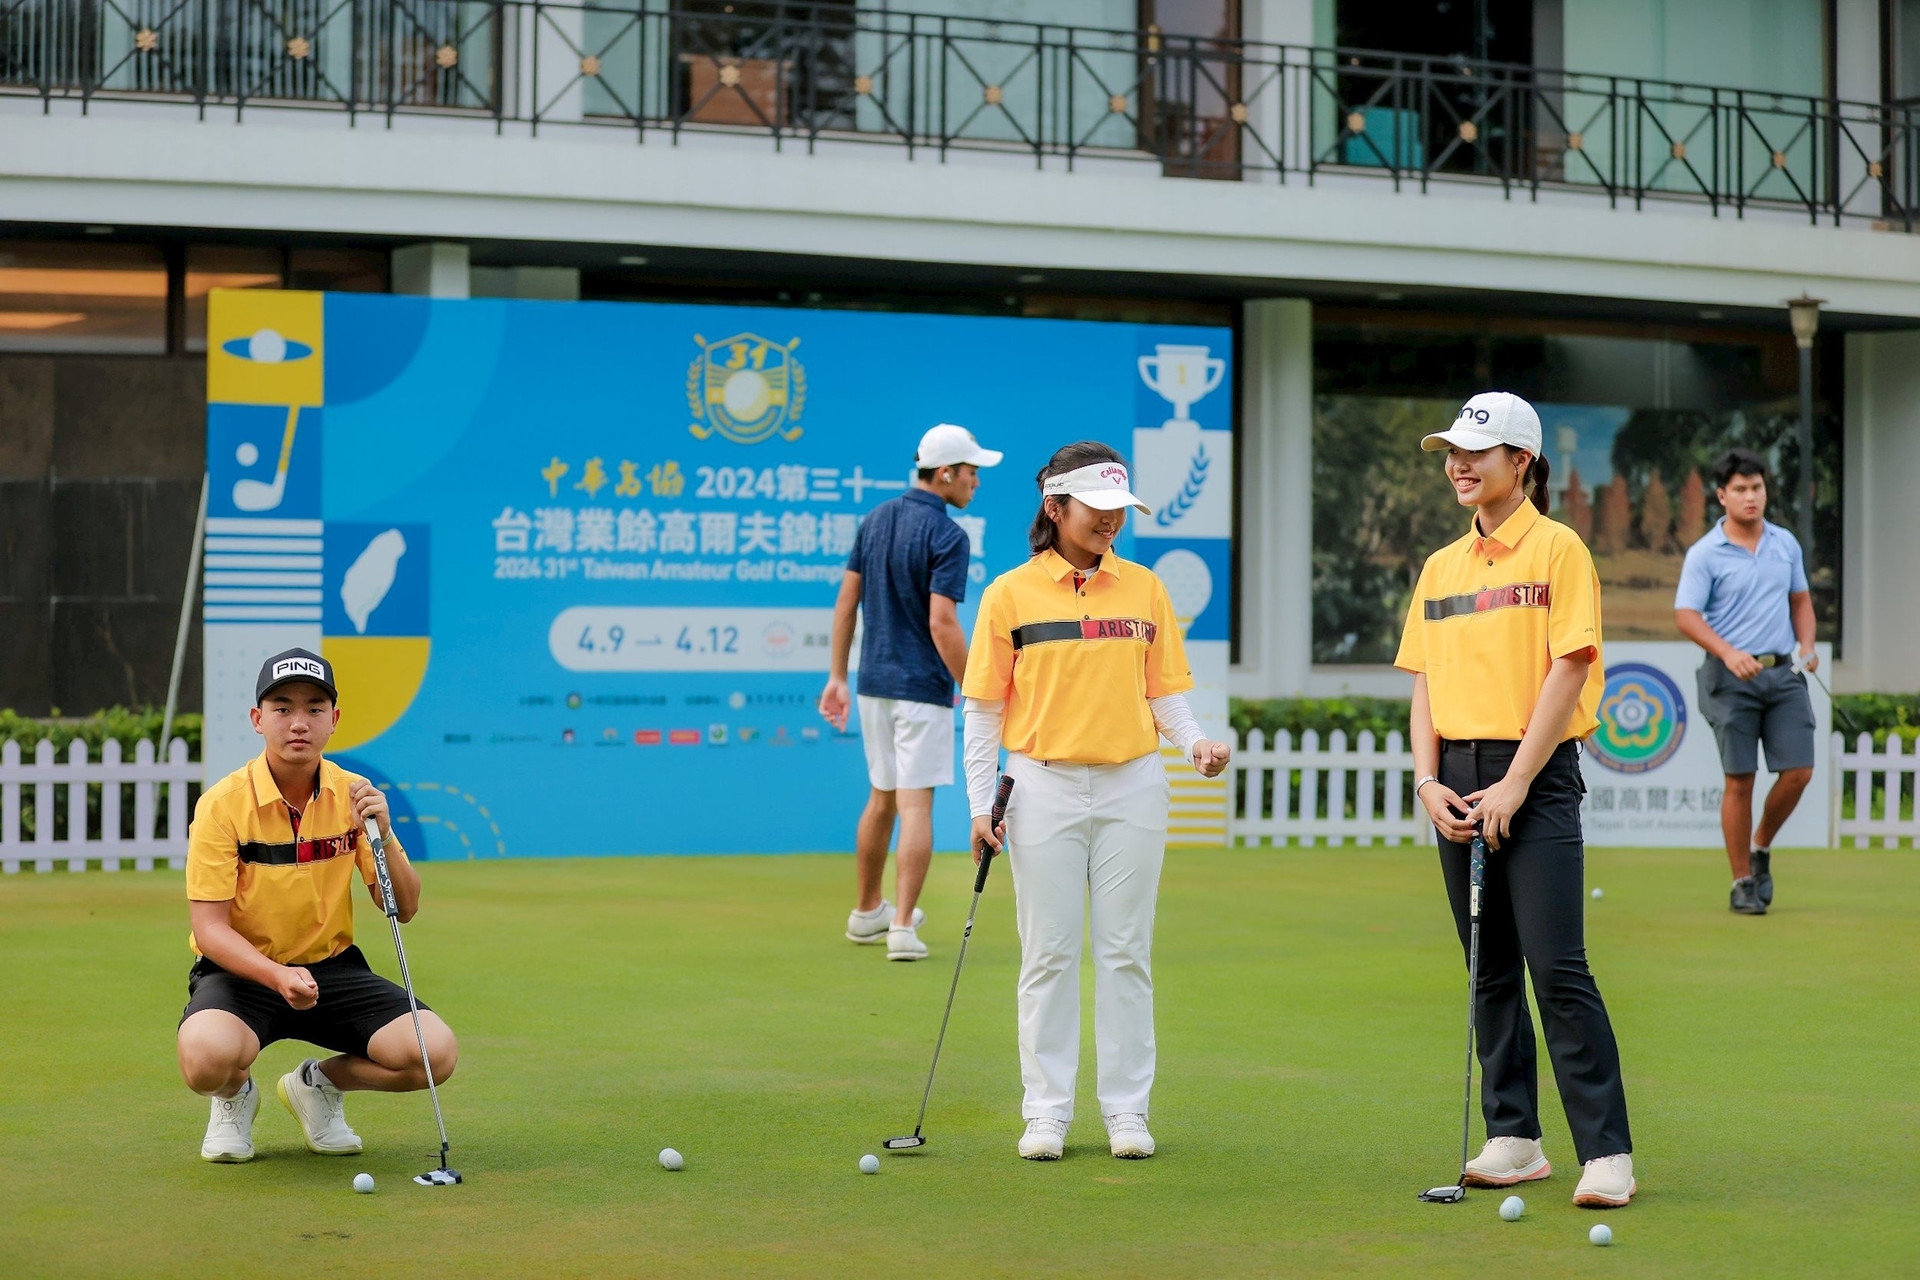 4月8日，据越南高尔夫球协会（VGA）的消息，越南高尔夫球队将前往中国台湾参加从4月9日至12日在高雄高尔夫球场（Kaohsiung Golf & Country Club）举行的2024第三十一屆台湾业余高尔夫锦标赛。这是一项汇聚了韩国、日本、泰国等众多强队的赛事。  参加本次比赛的越南队有著名运动员如：阮英明（Nguyen Anh Minh）、黎祝安（Le Chuc An）、黎阮明英（Anna Le）和团长白强康（Bach Cuong Khang）教练。这是越南高尔夫球队连续第二年参加此项赛事。  本次比赛，两名女运动员黎祝安和黎阮明英是首次参赛的。而高尔夫球手阮英明自2023年就参加了该赛事，并以总成绩（ 6）获得第五名。  经过两轮资格赛，排名中成绩最好的30名男运动员和30名女运动员将进入第三轮比赛和决赛。